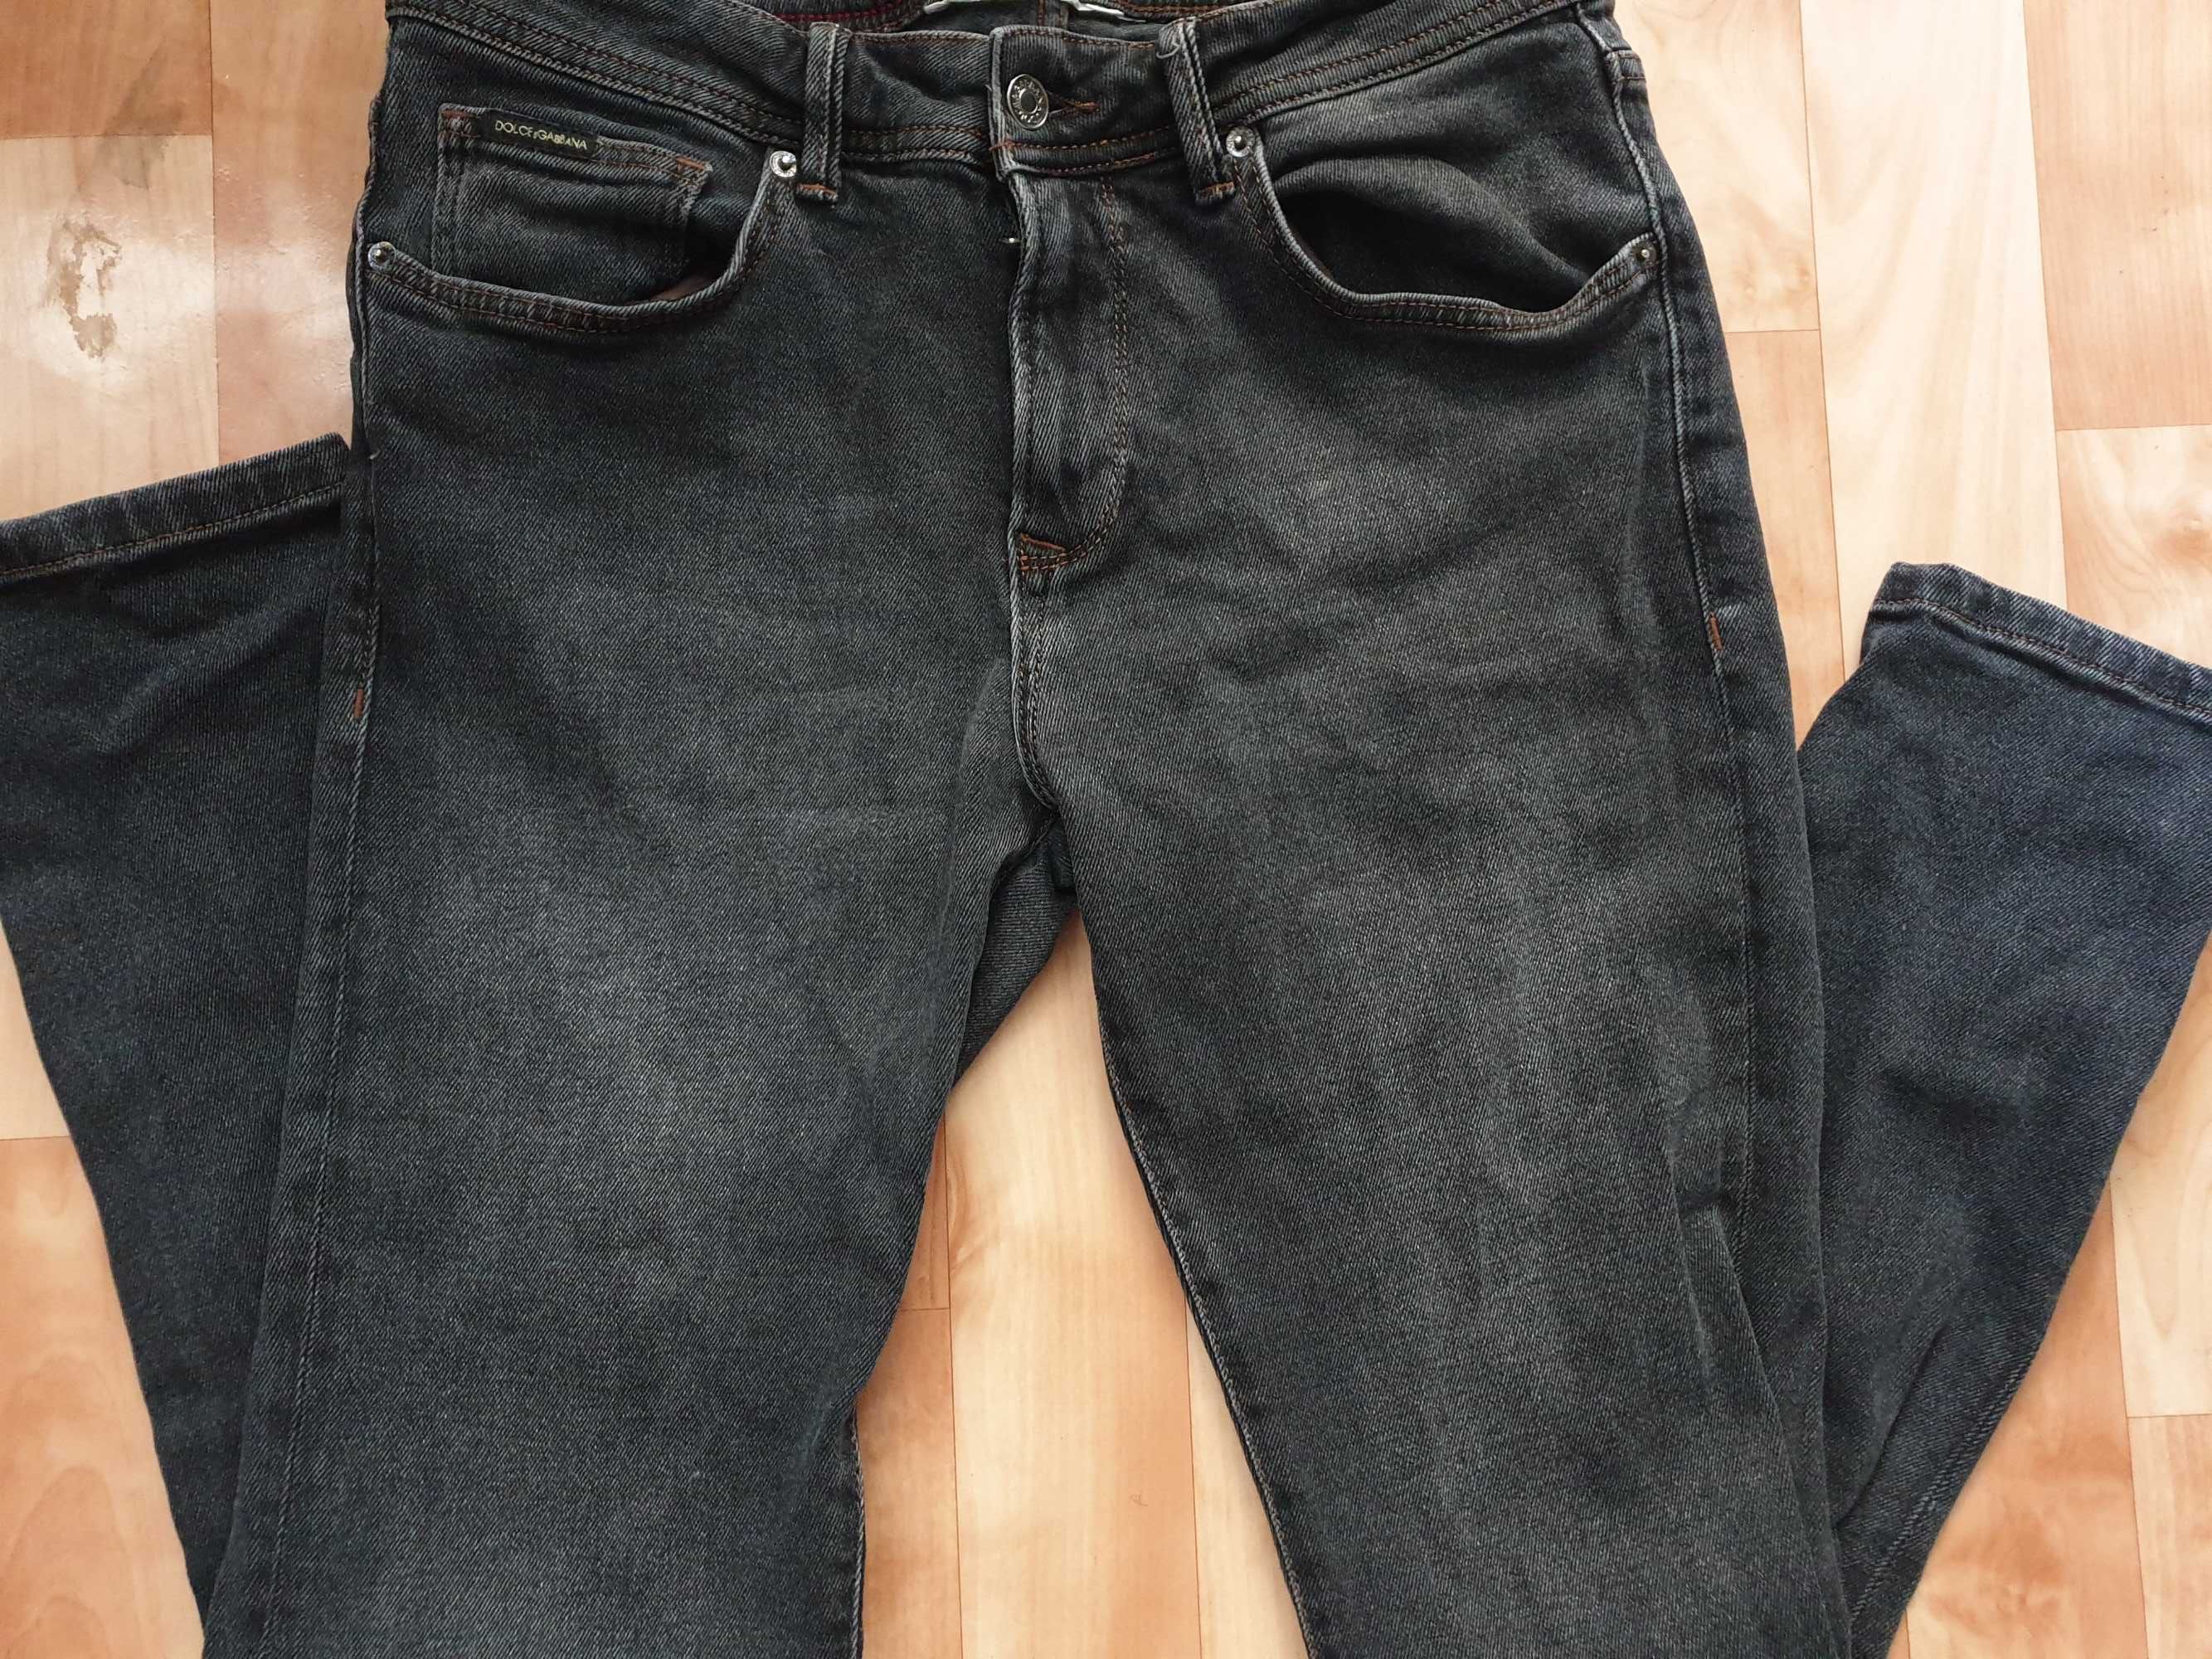 джинсы мужские отличного качества размер 46 цена 2000 тенге